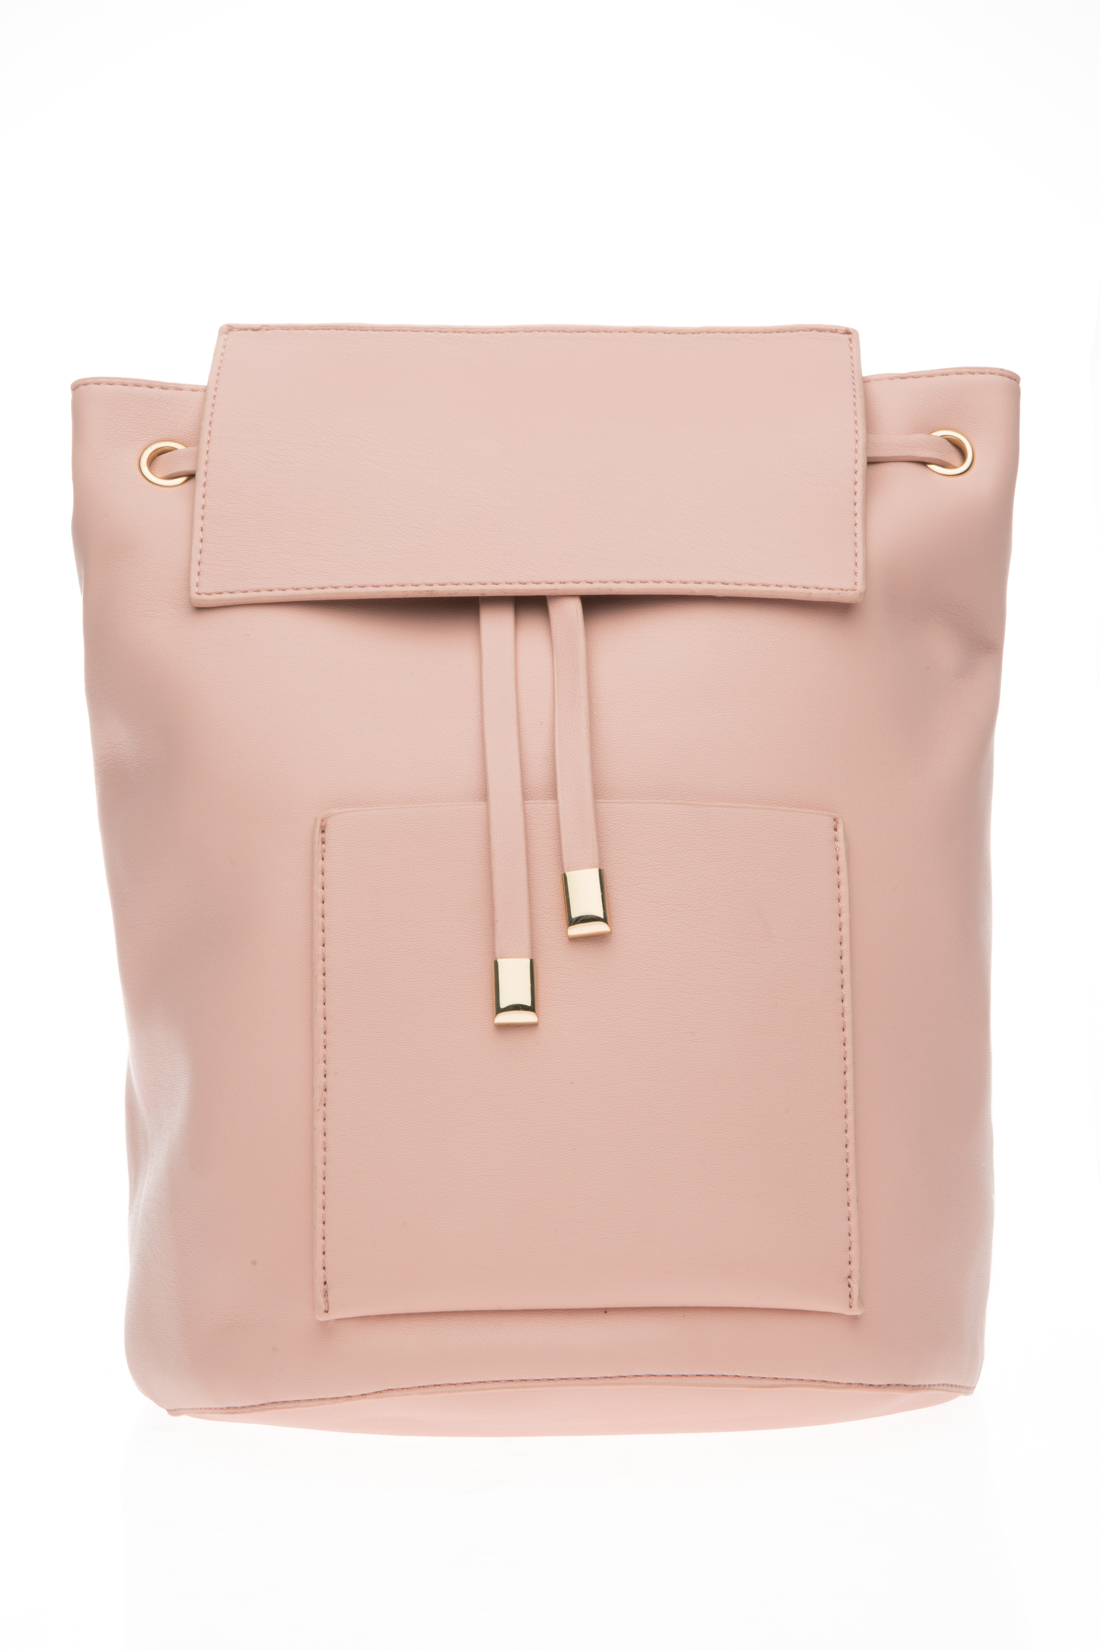 Рюкзак на кнопке (арт. baon B377008), размер Без/раз, цвет розовый